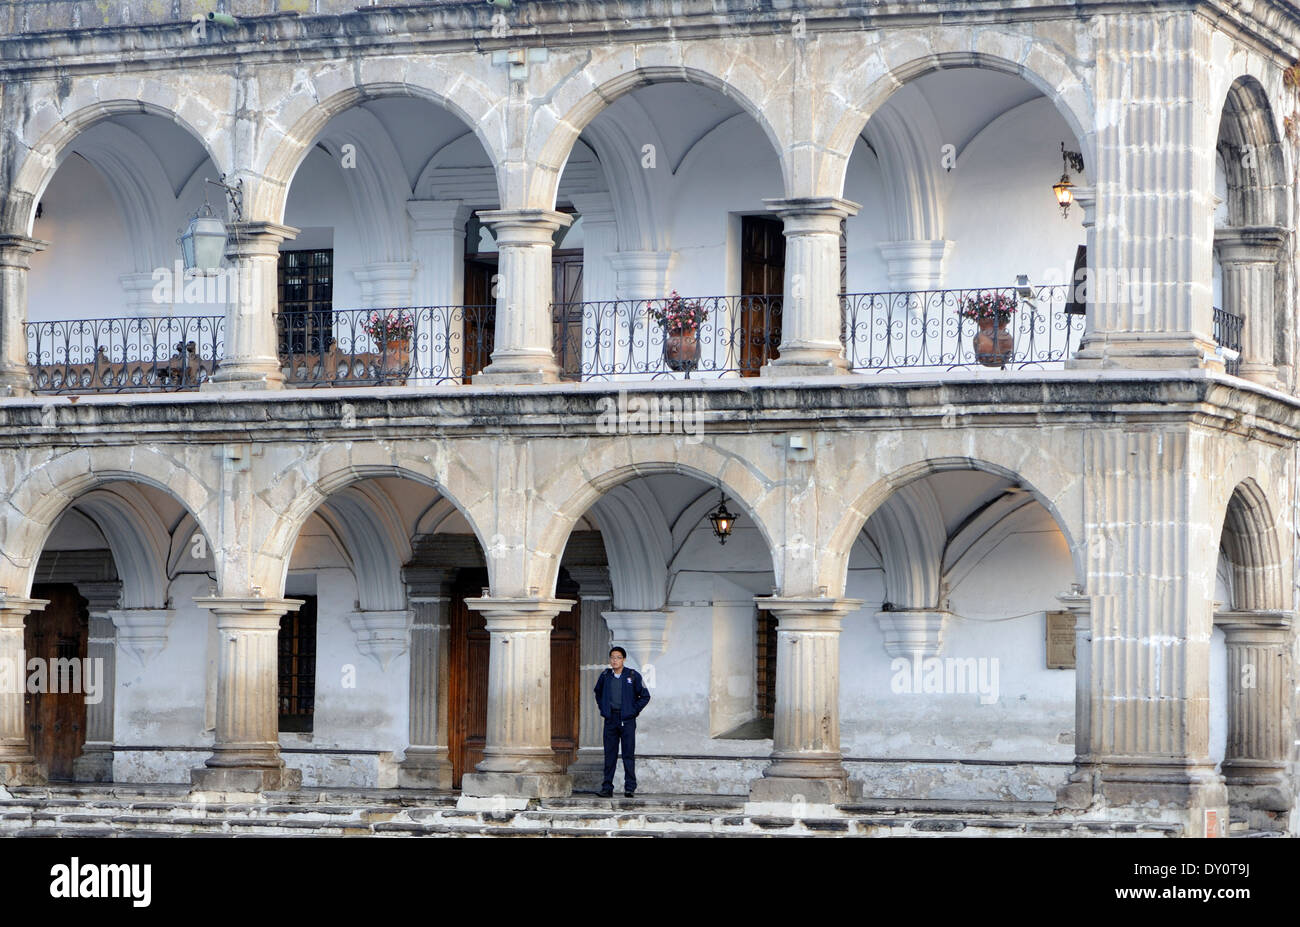 Les colonnades en pierre solide du 18e siècle, el Ayuntamiento, à l'hôtel de ville, en s'appuyant sur le côté nord du Parque Central. Banque D'Images